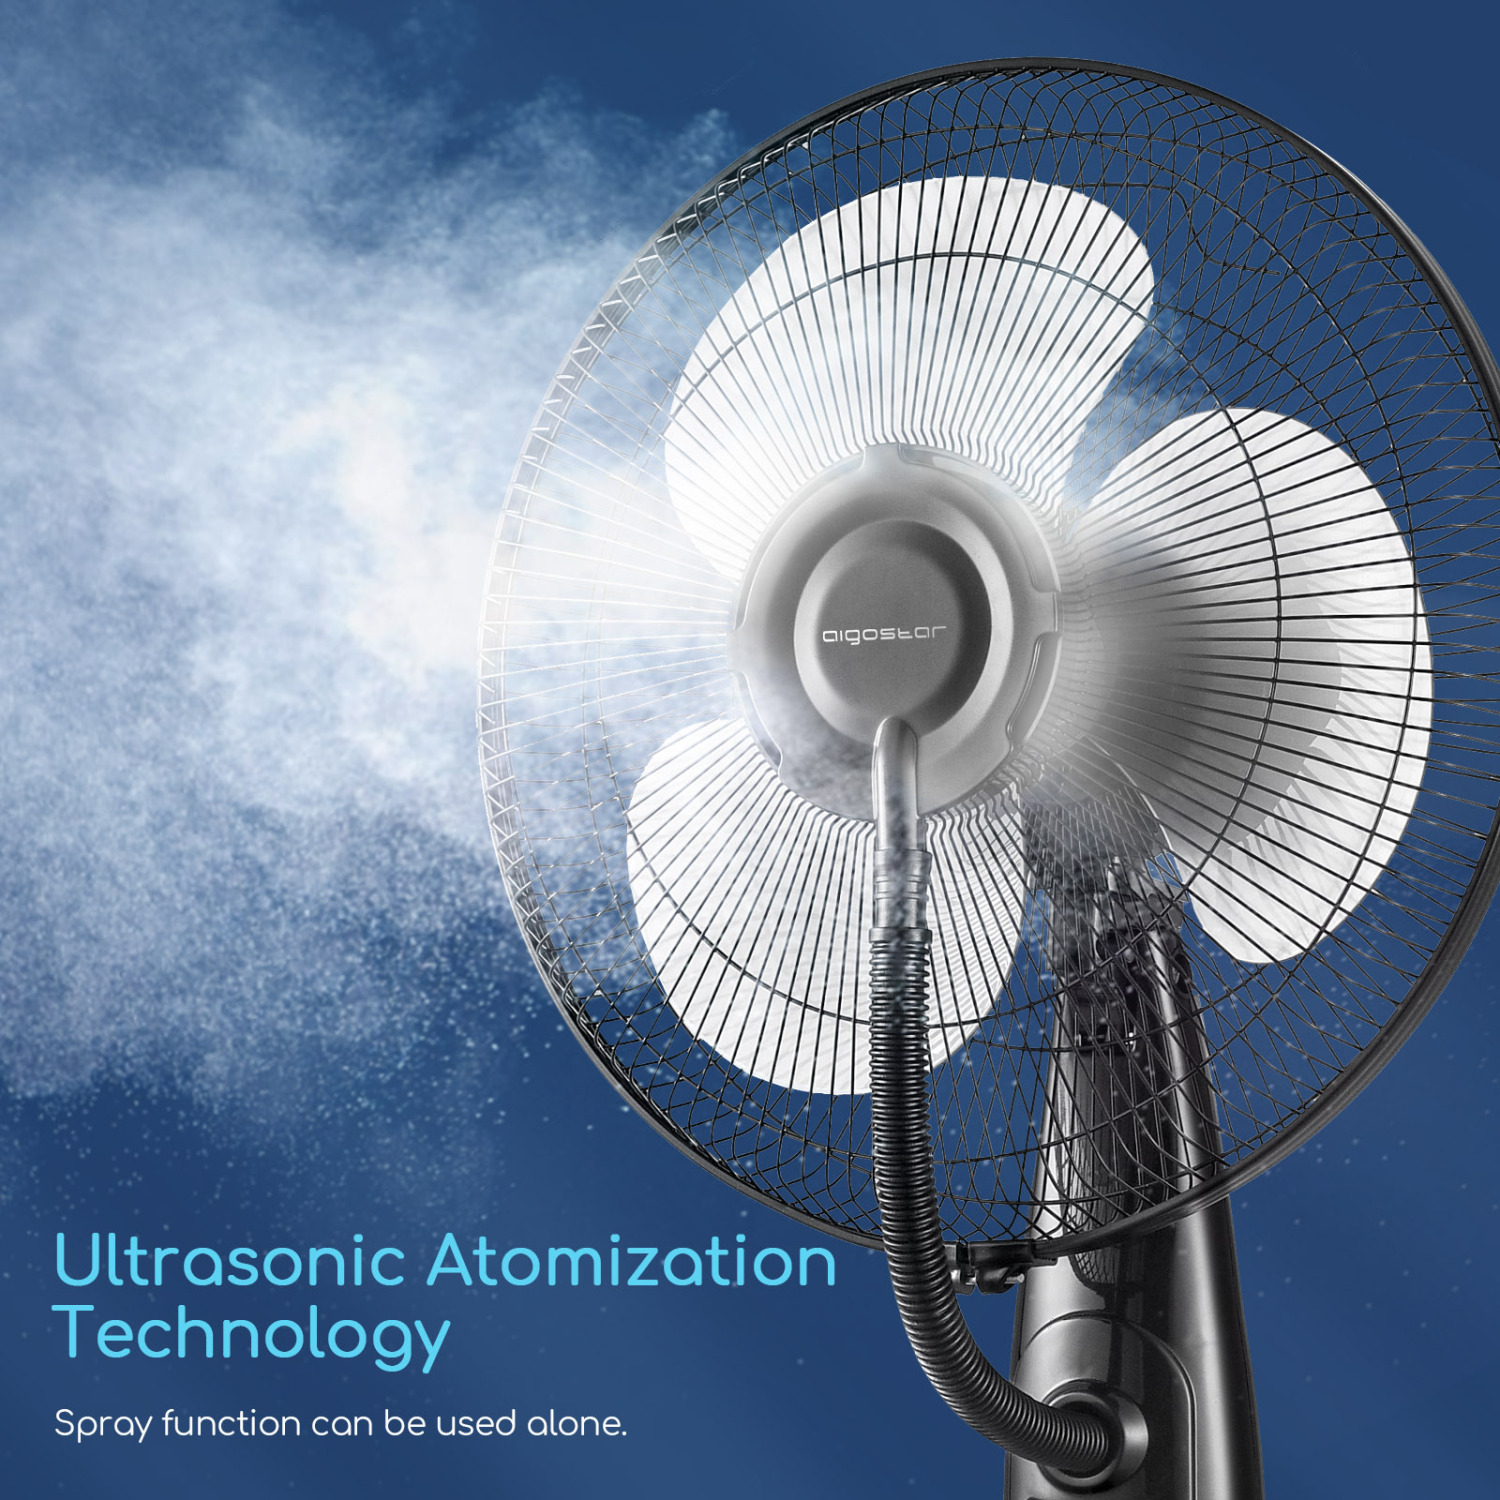 Aigostar Breeze ventilatore con nebulizzatore, ventilatore a piantana potente, 3 modalità 3 velocità, timer 7,5 h, telecomando, spruzzo, aspetto adorabile con un design esclusivo.